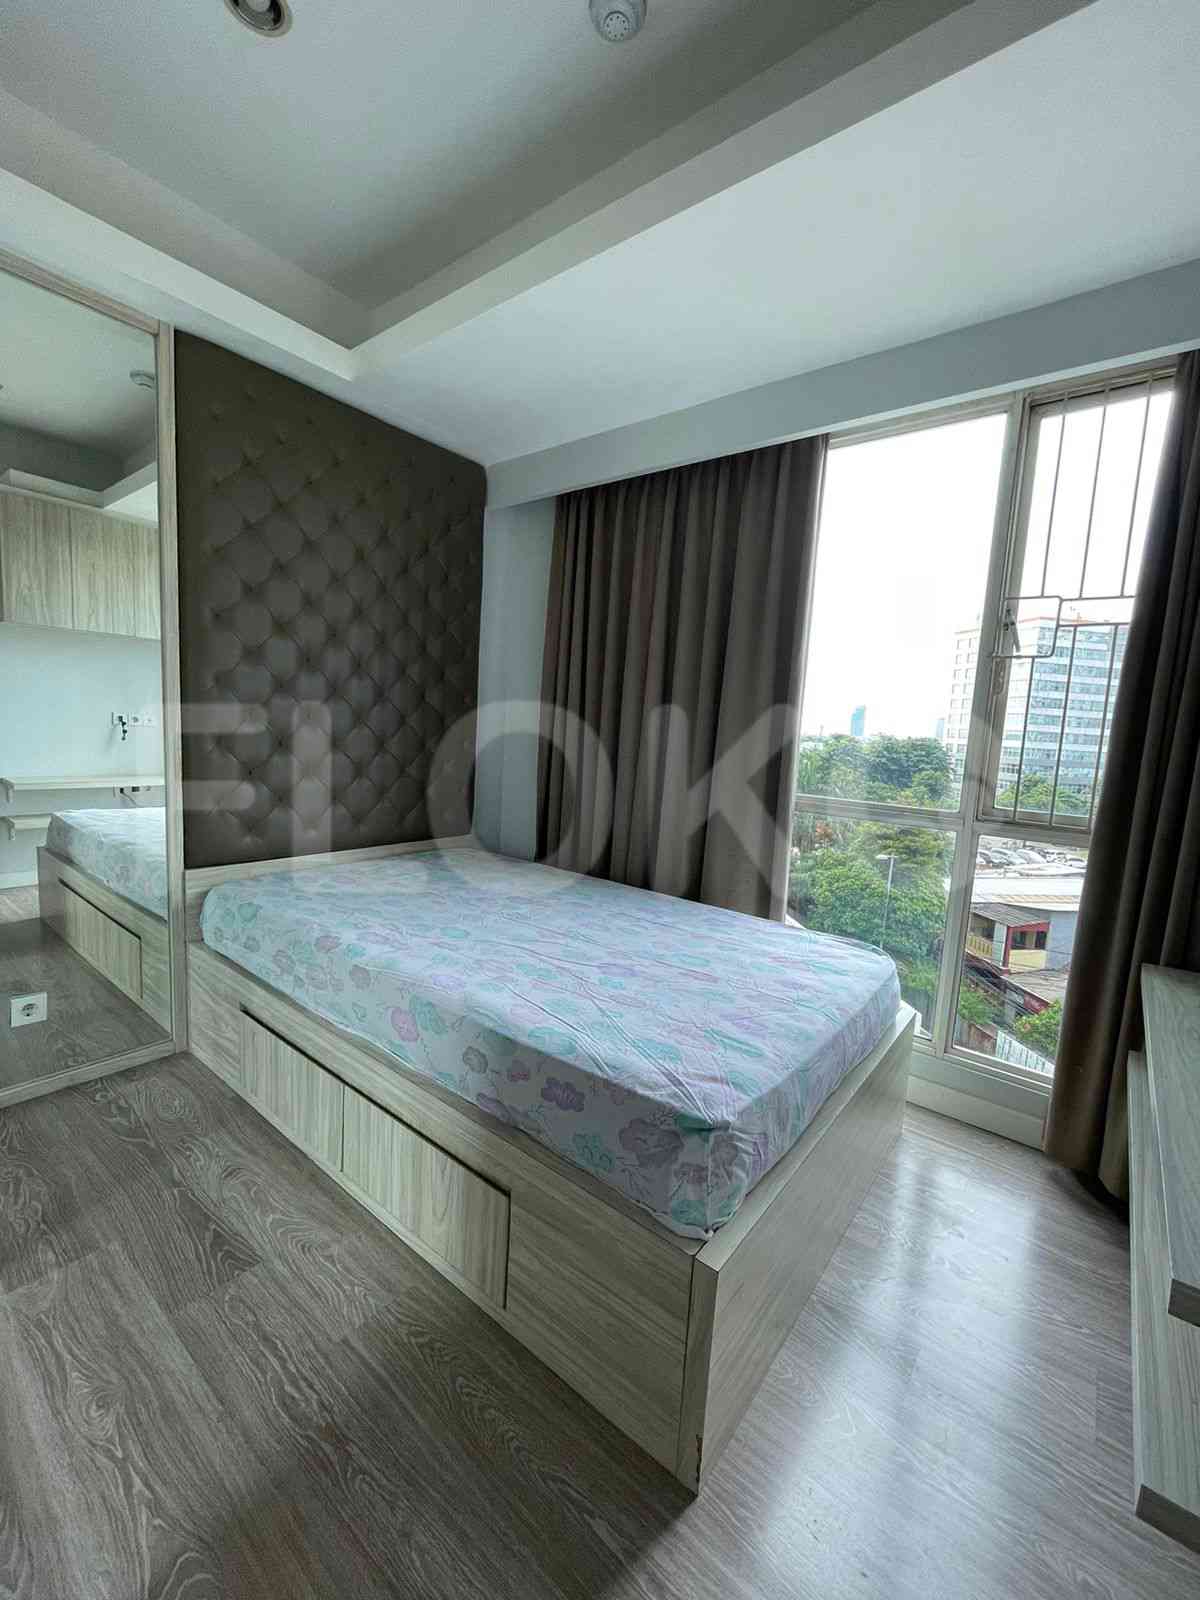 3 Bedroom on 5th Floor for Rent in Casa Grande - fte1f1 2